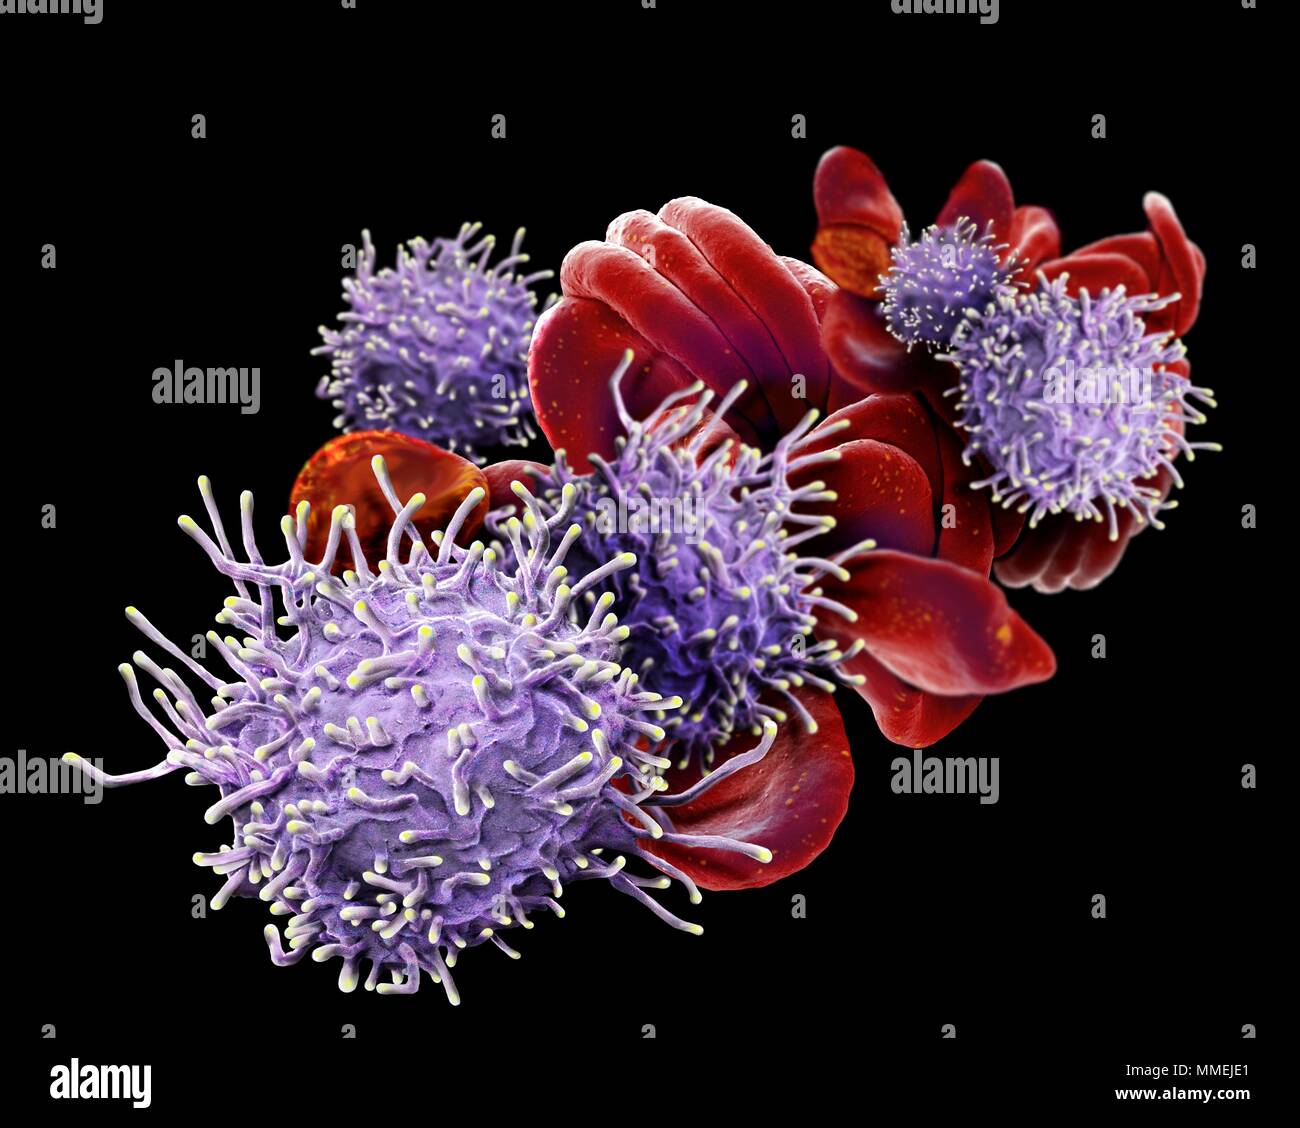 Les lymphocytes T activés et les globules rouges (GR). Couleur de l'analyse des électrons Microphotographie (SEM) de les lymphocytes T activés et de bassin à partir d'un sang humain Banque D'Images